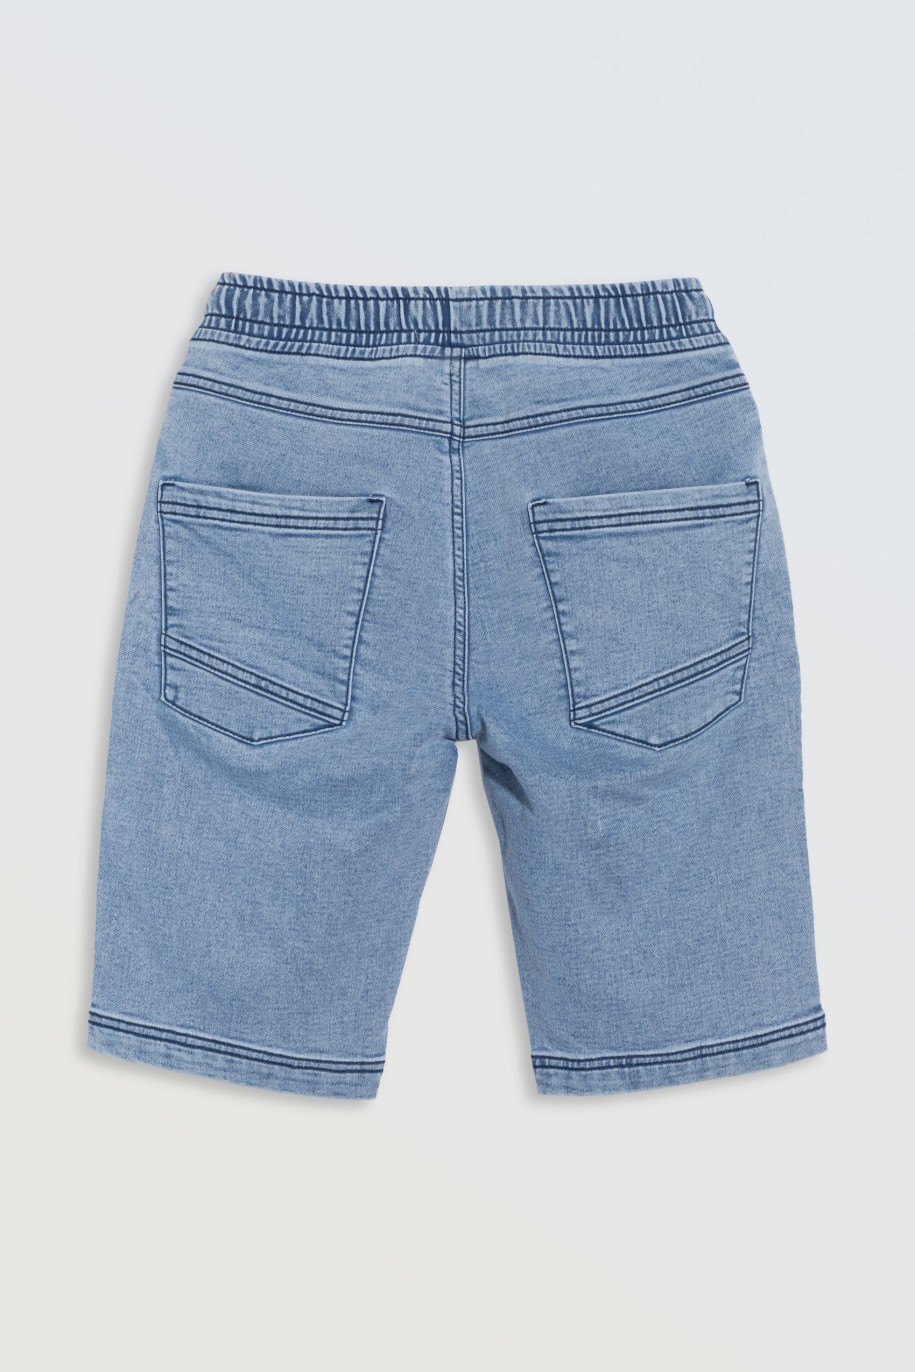 Niebieskie krótkie spodenki jeansowe z modnymi przeszyciami - 46772